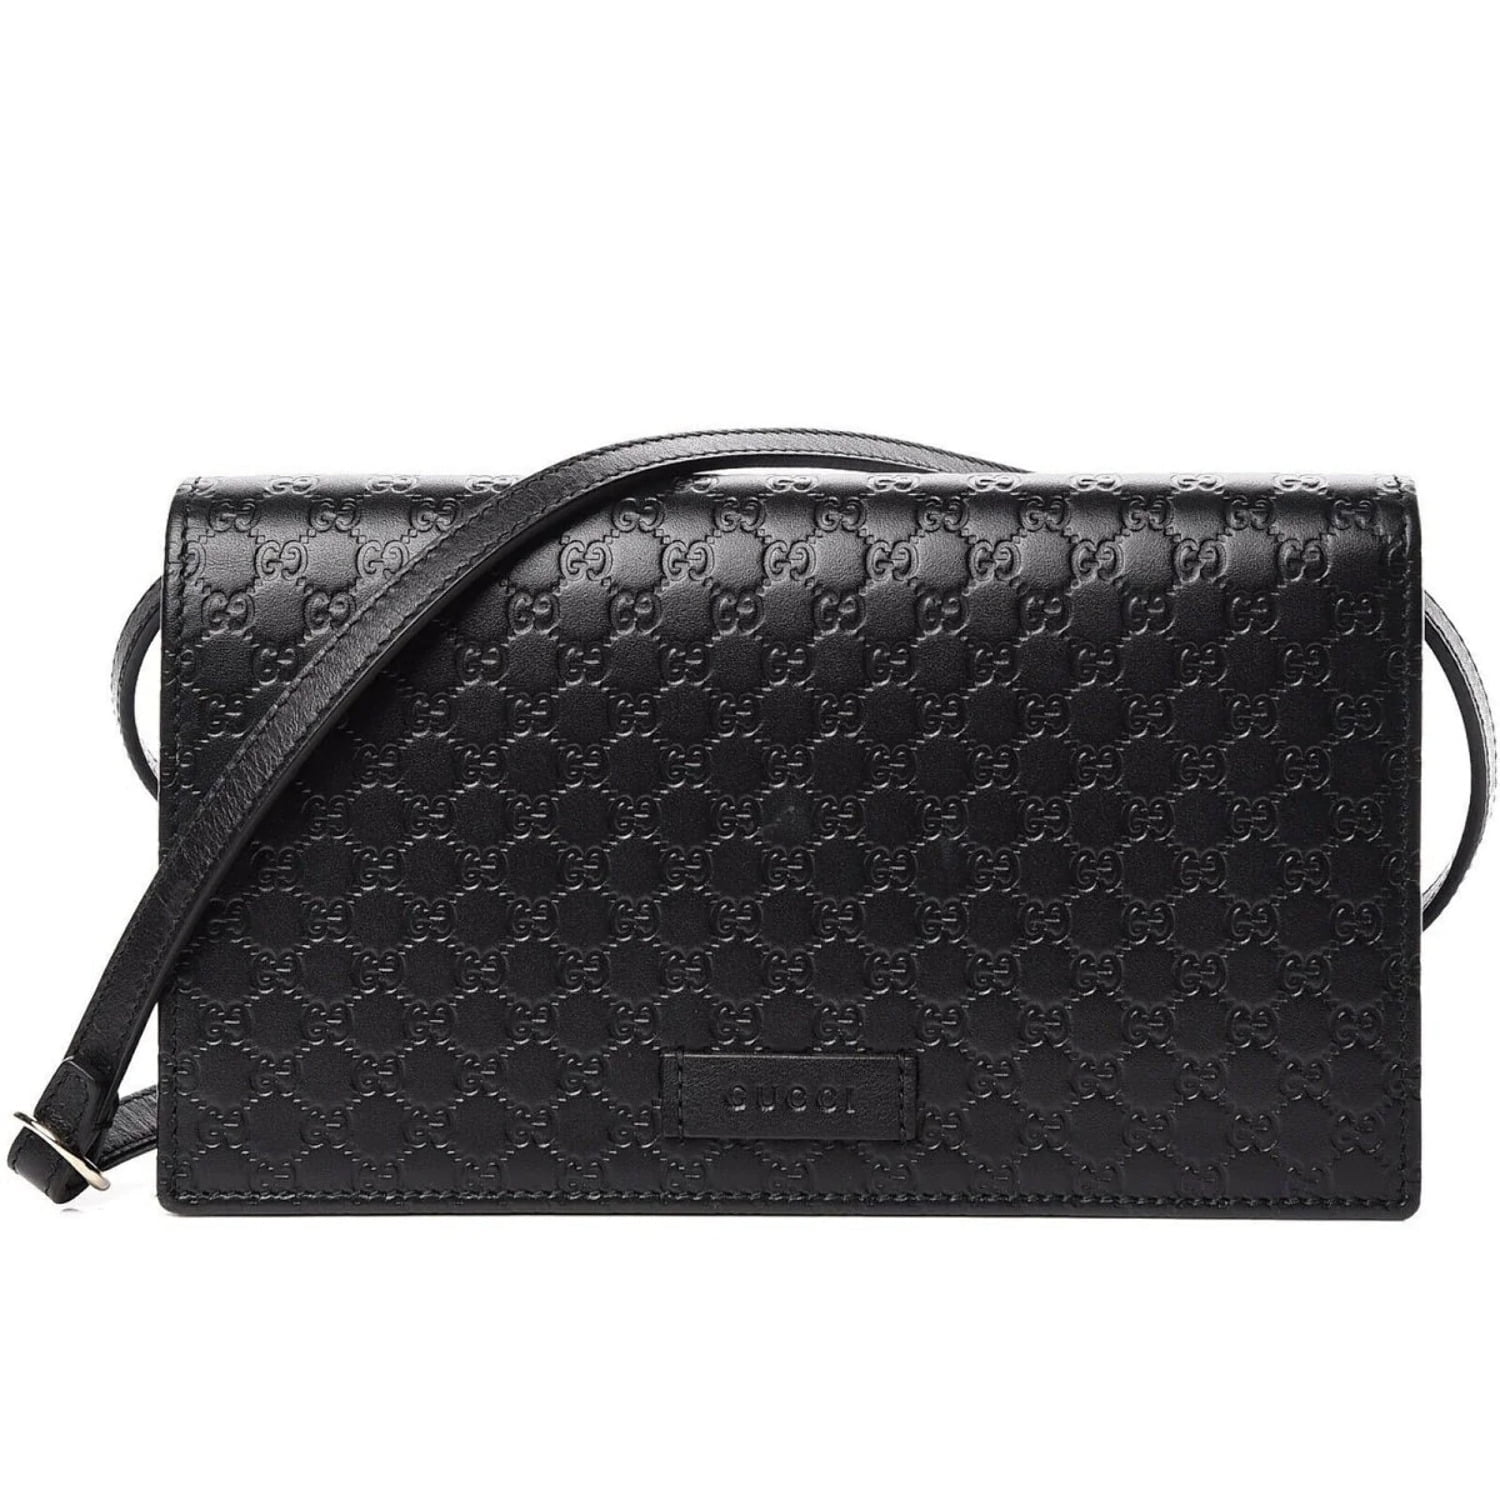 Gucci Handbags | The RealReal